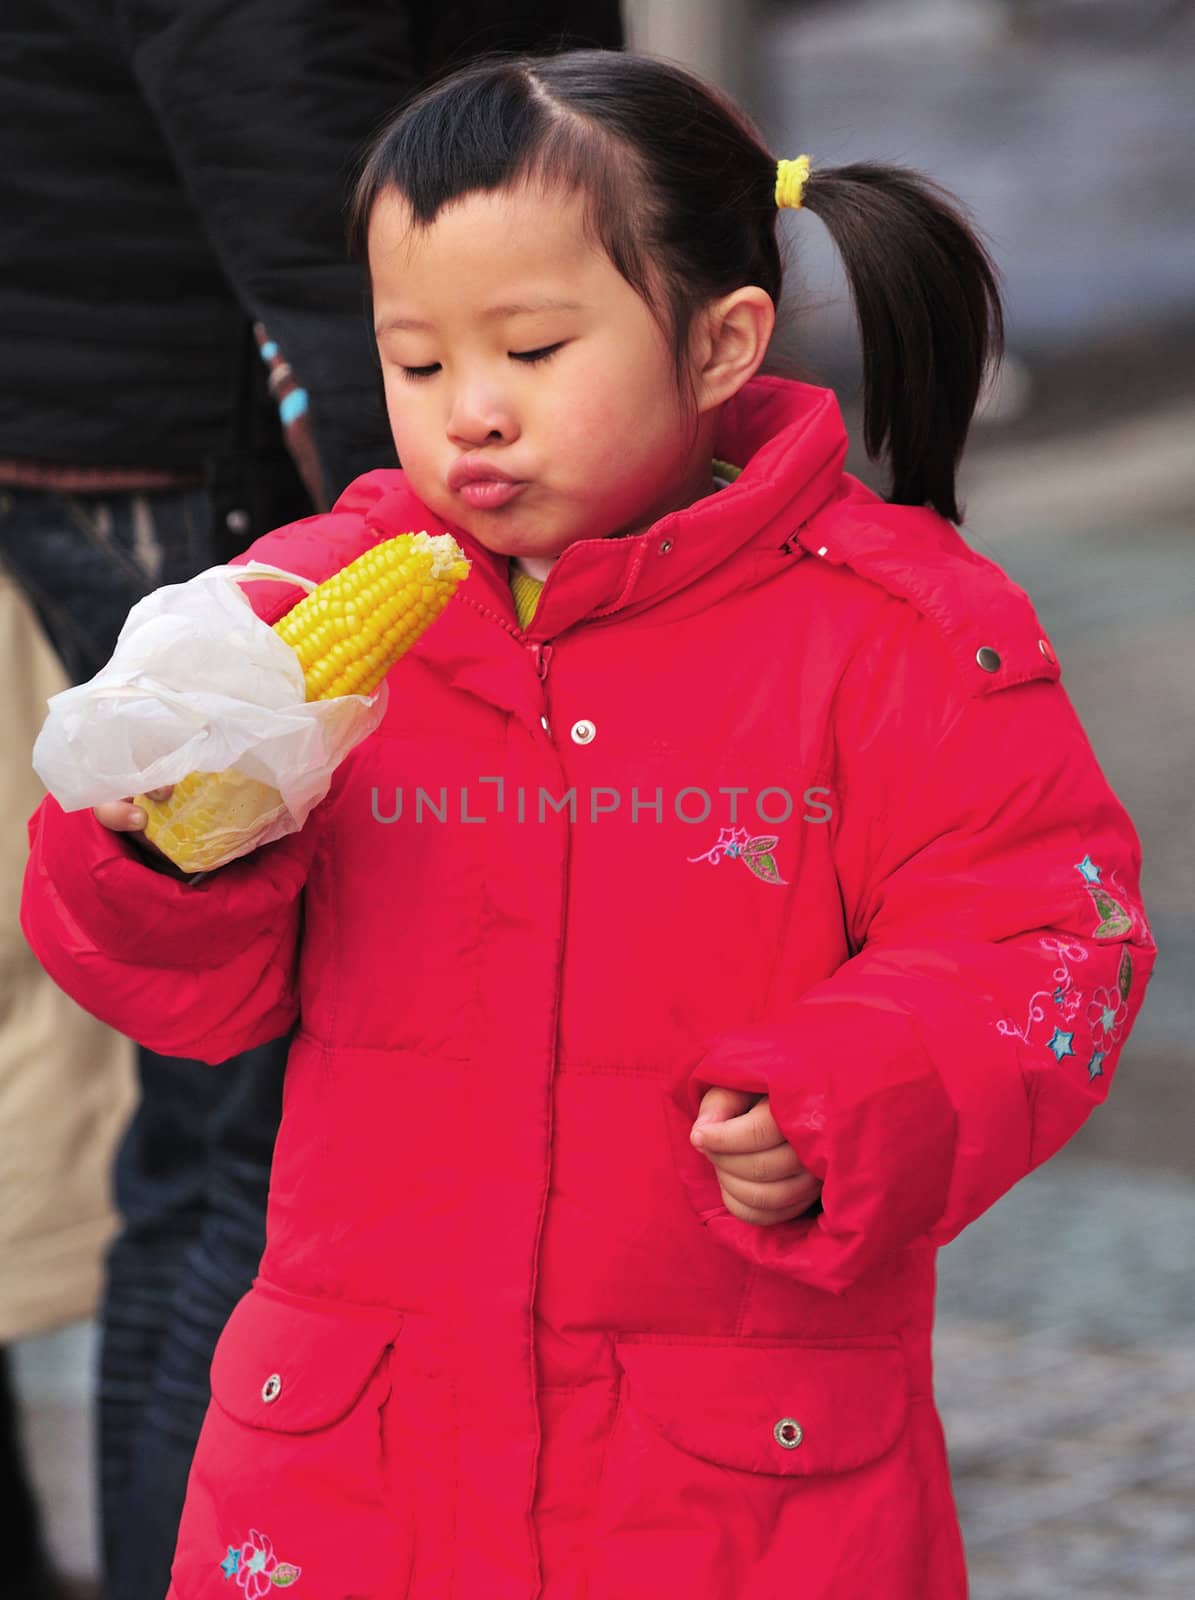 Little Chinese girl eating corn in Shanghai street